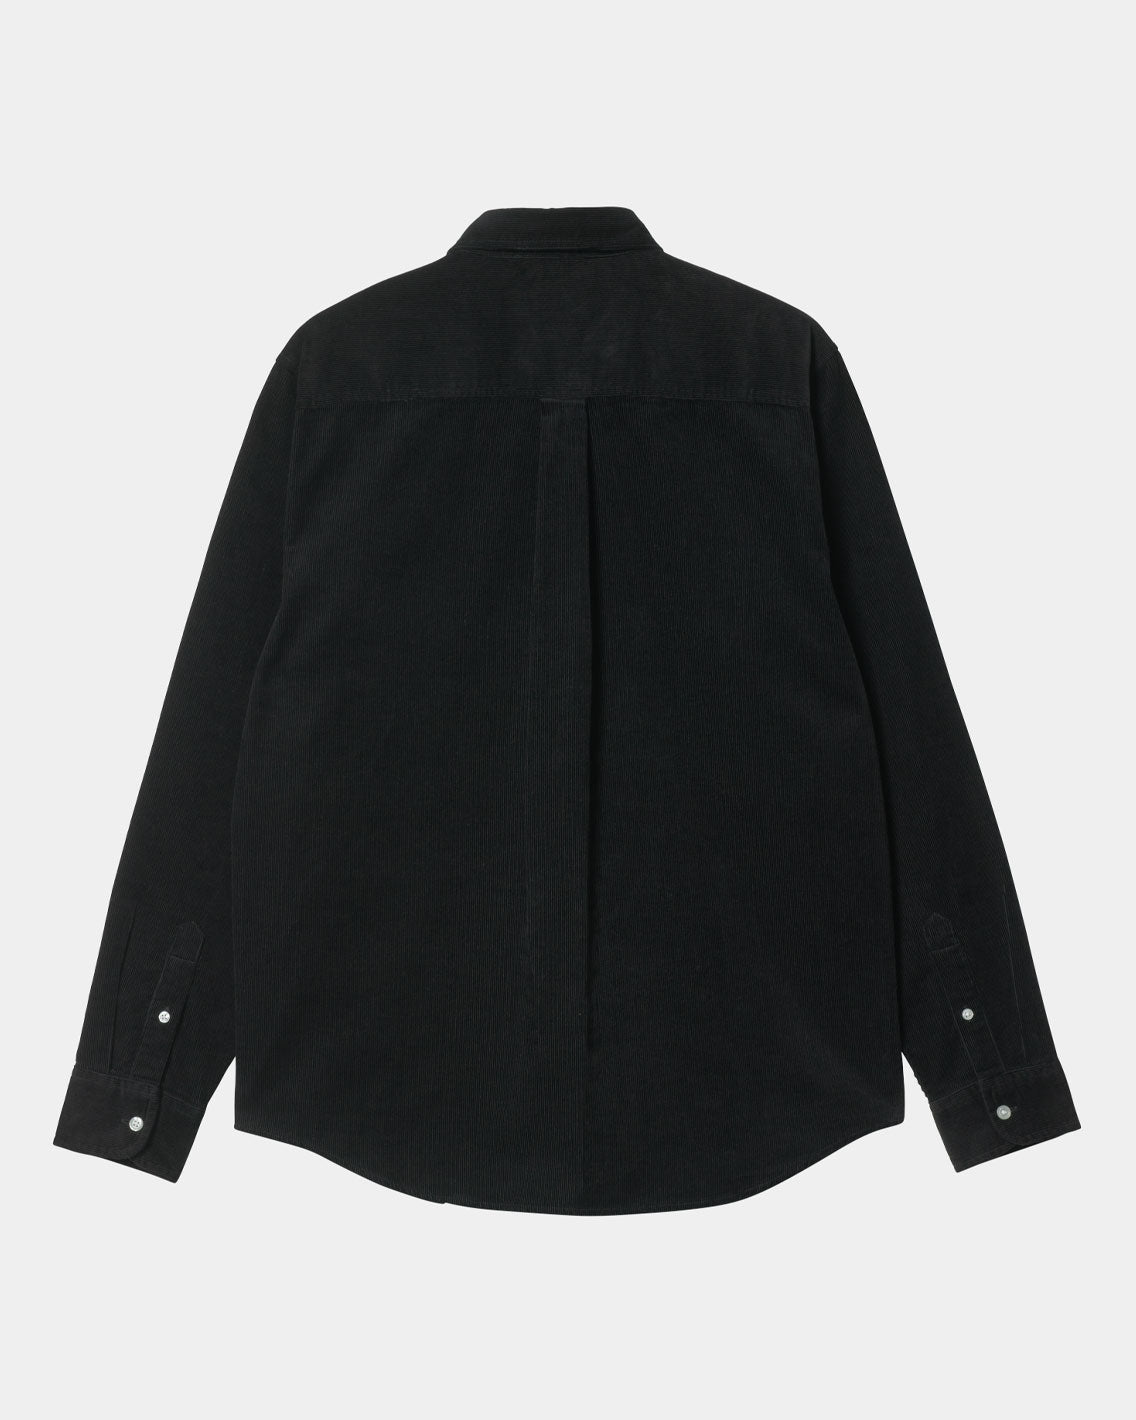 Carhartt - Madison L/S Fine Cord Shirt - Black / Wax